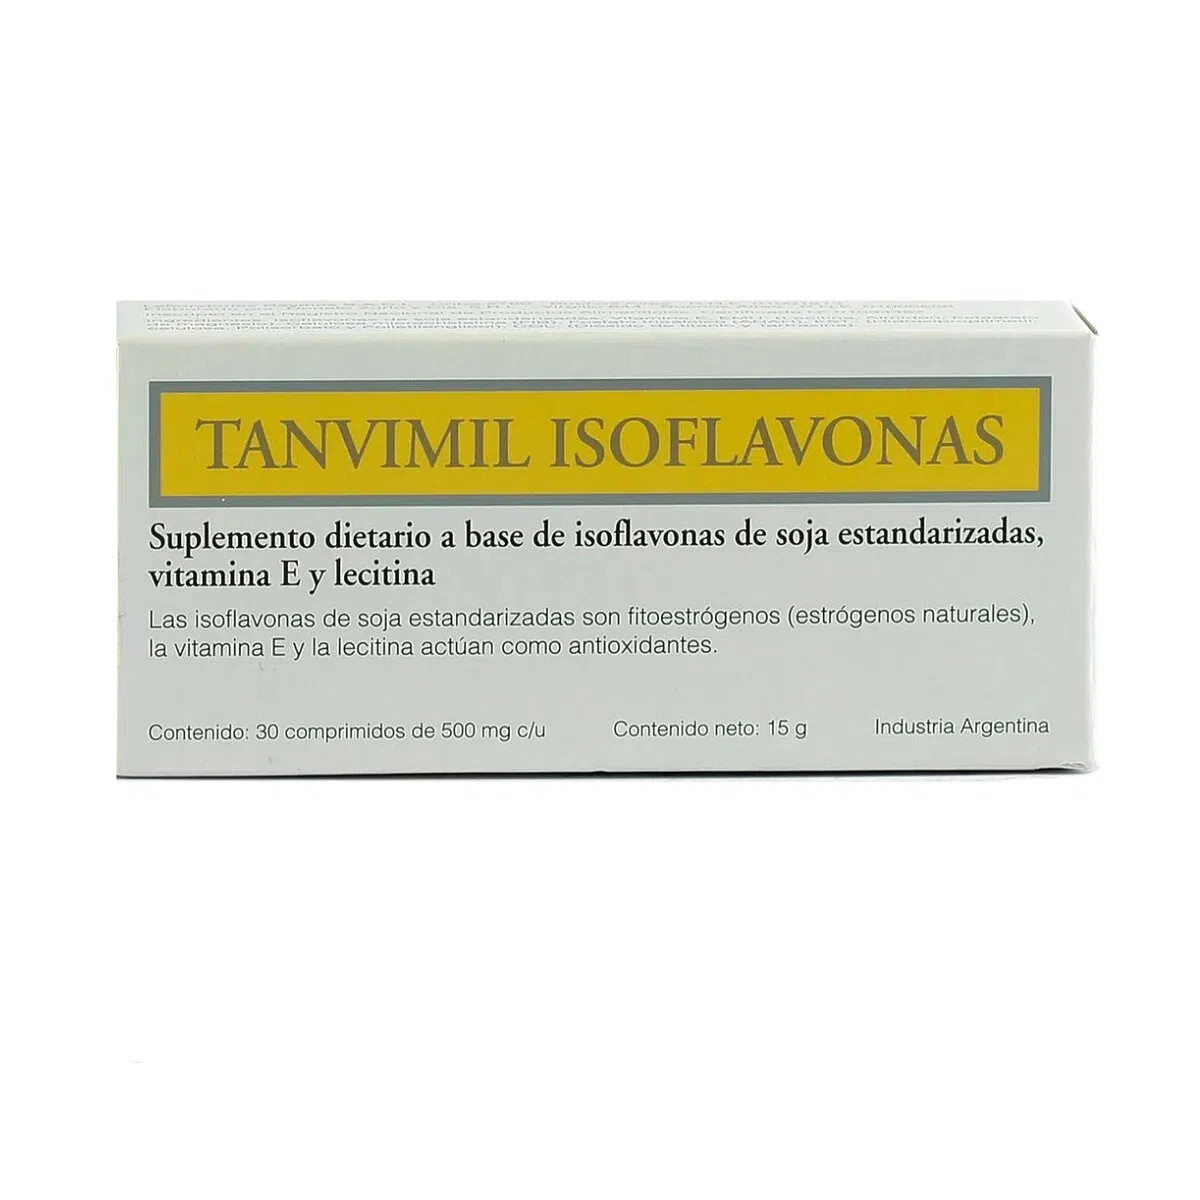 TANVIMIL ISOFLAVONAS X 30 COMP